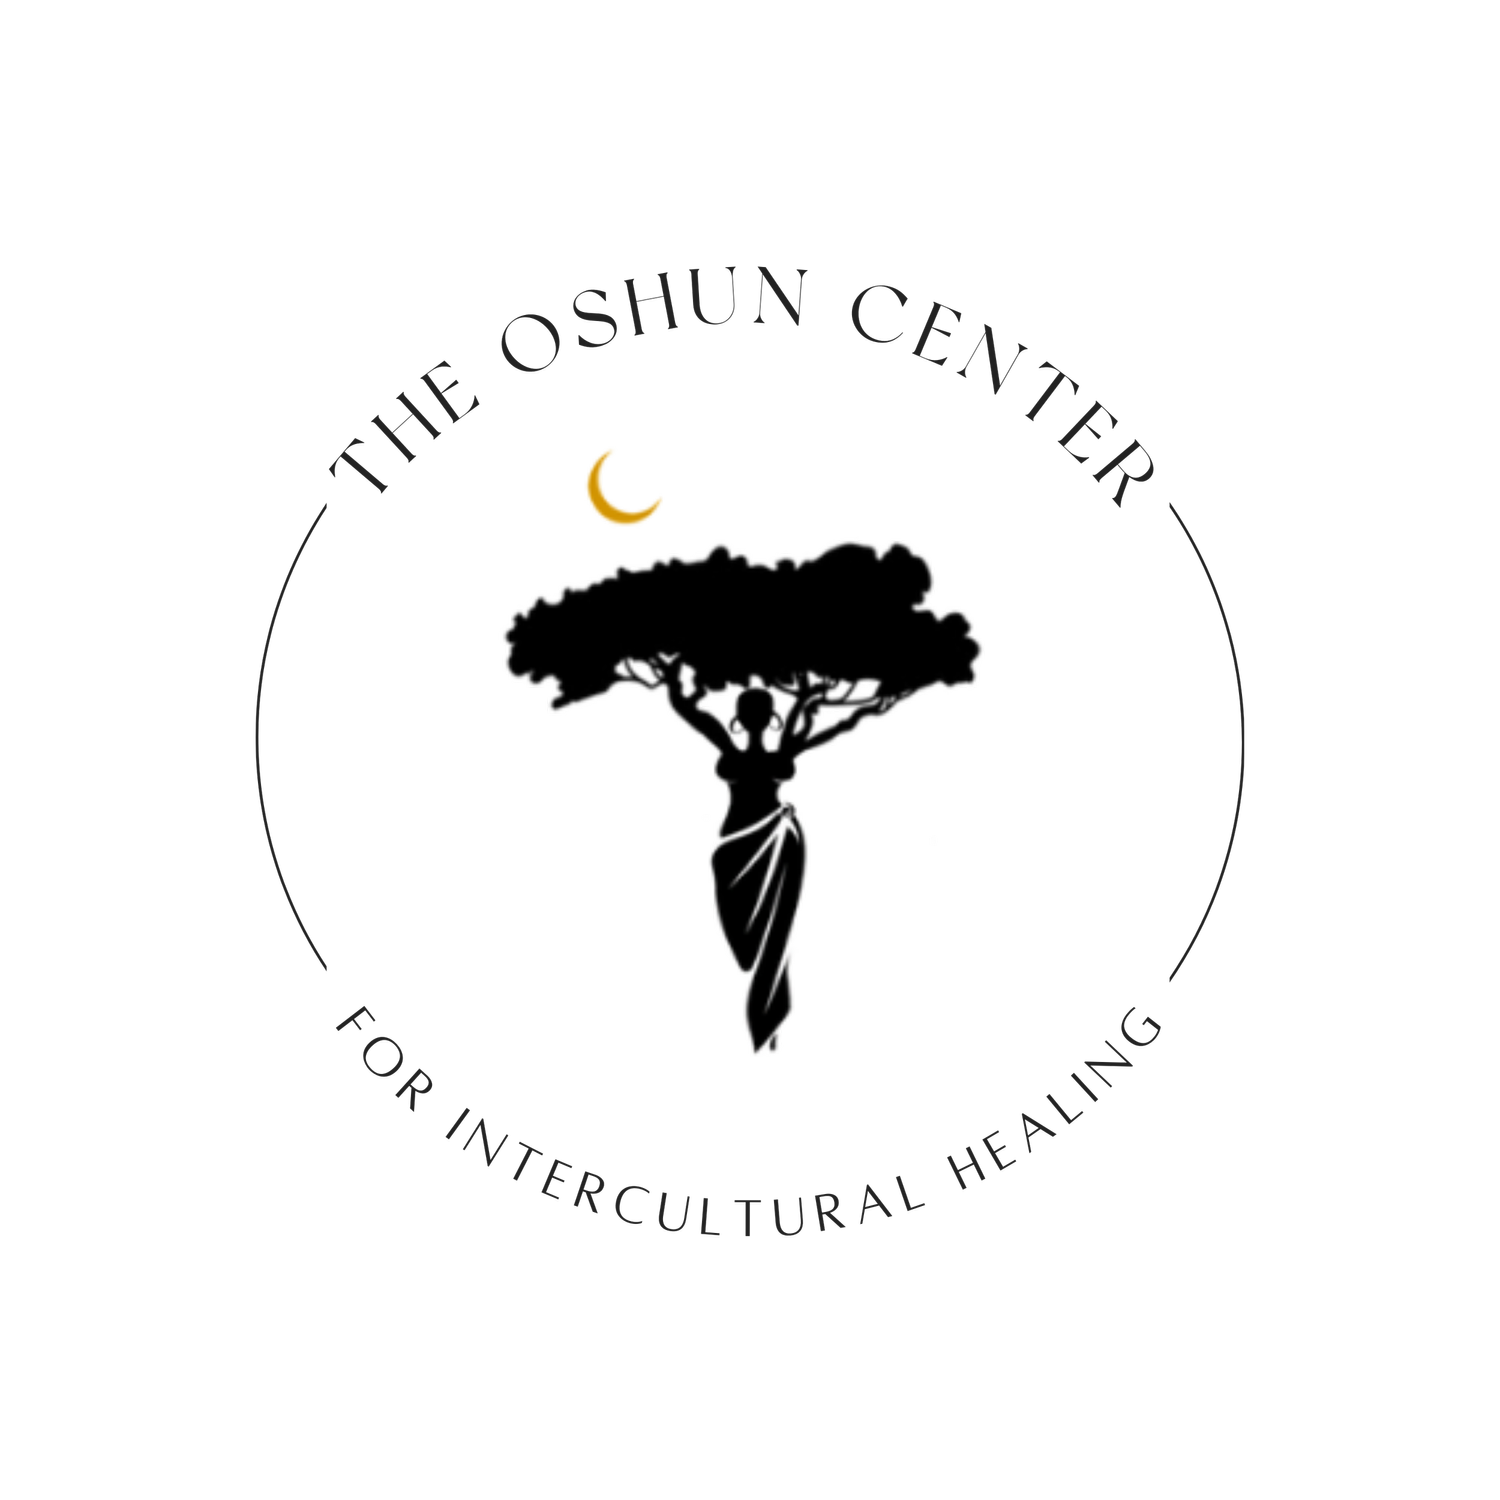 The Oshun Center for Intercultural Healing